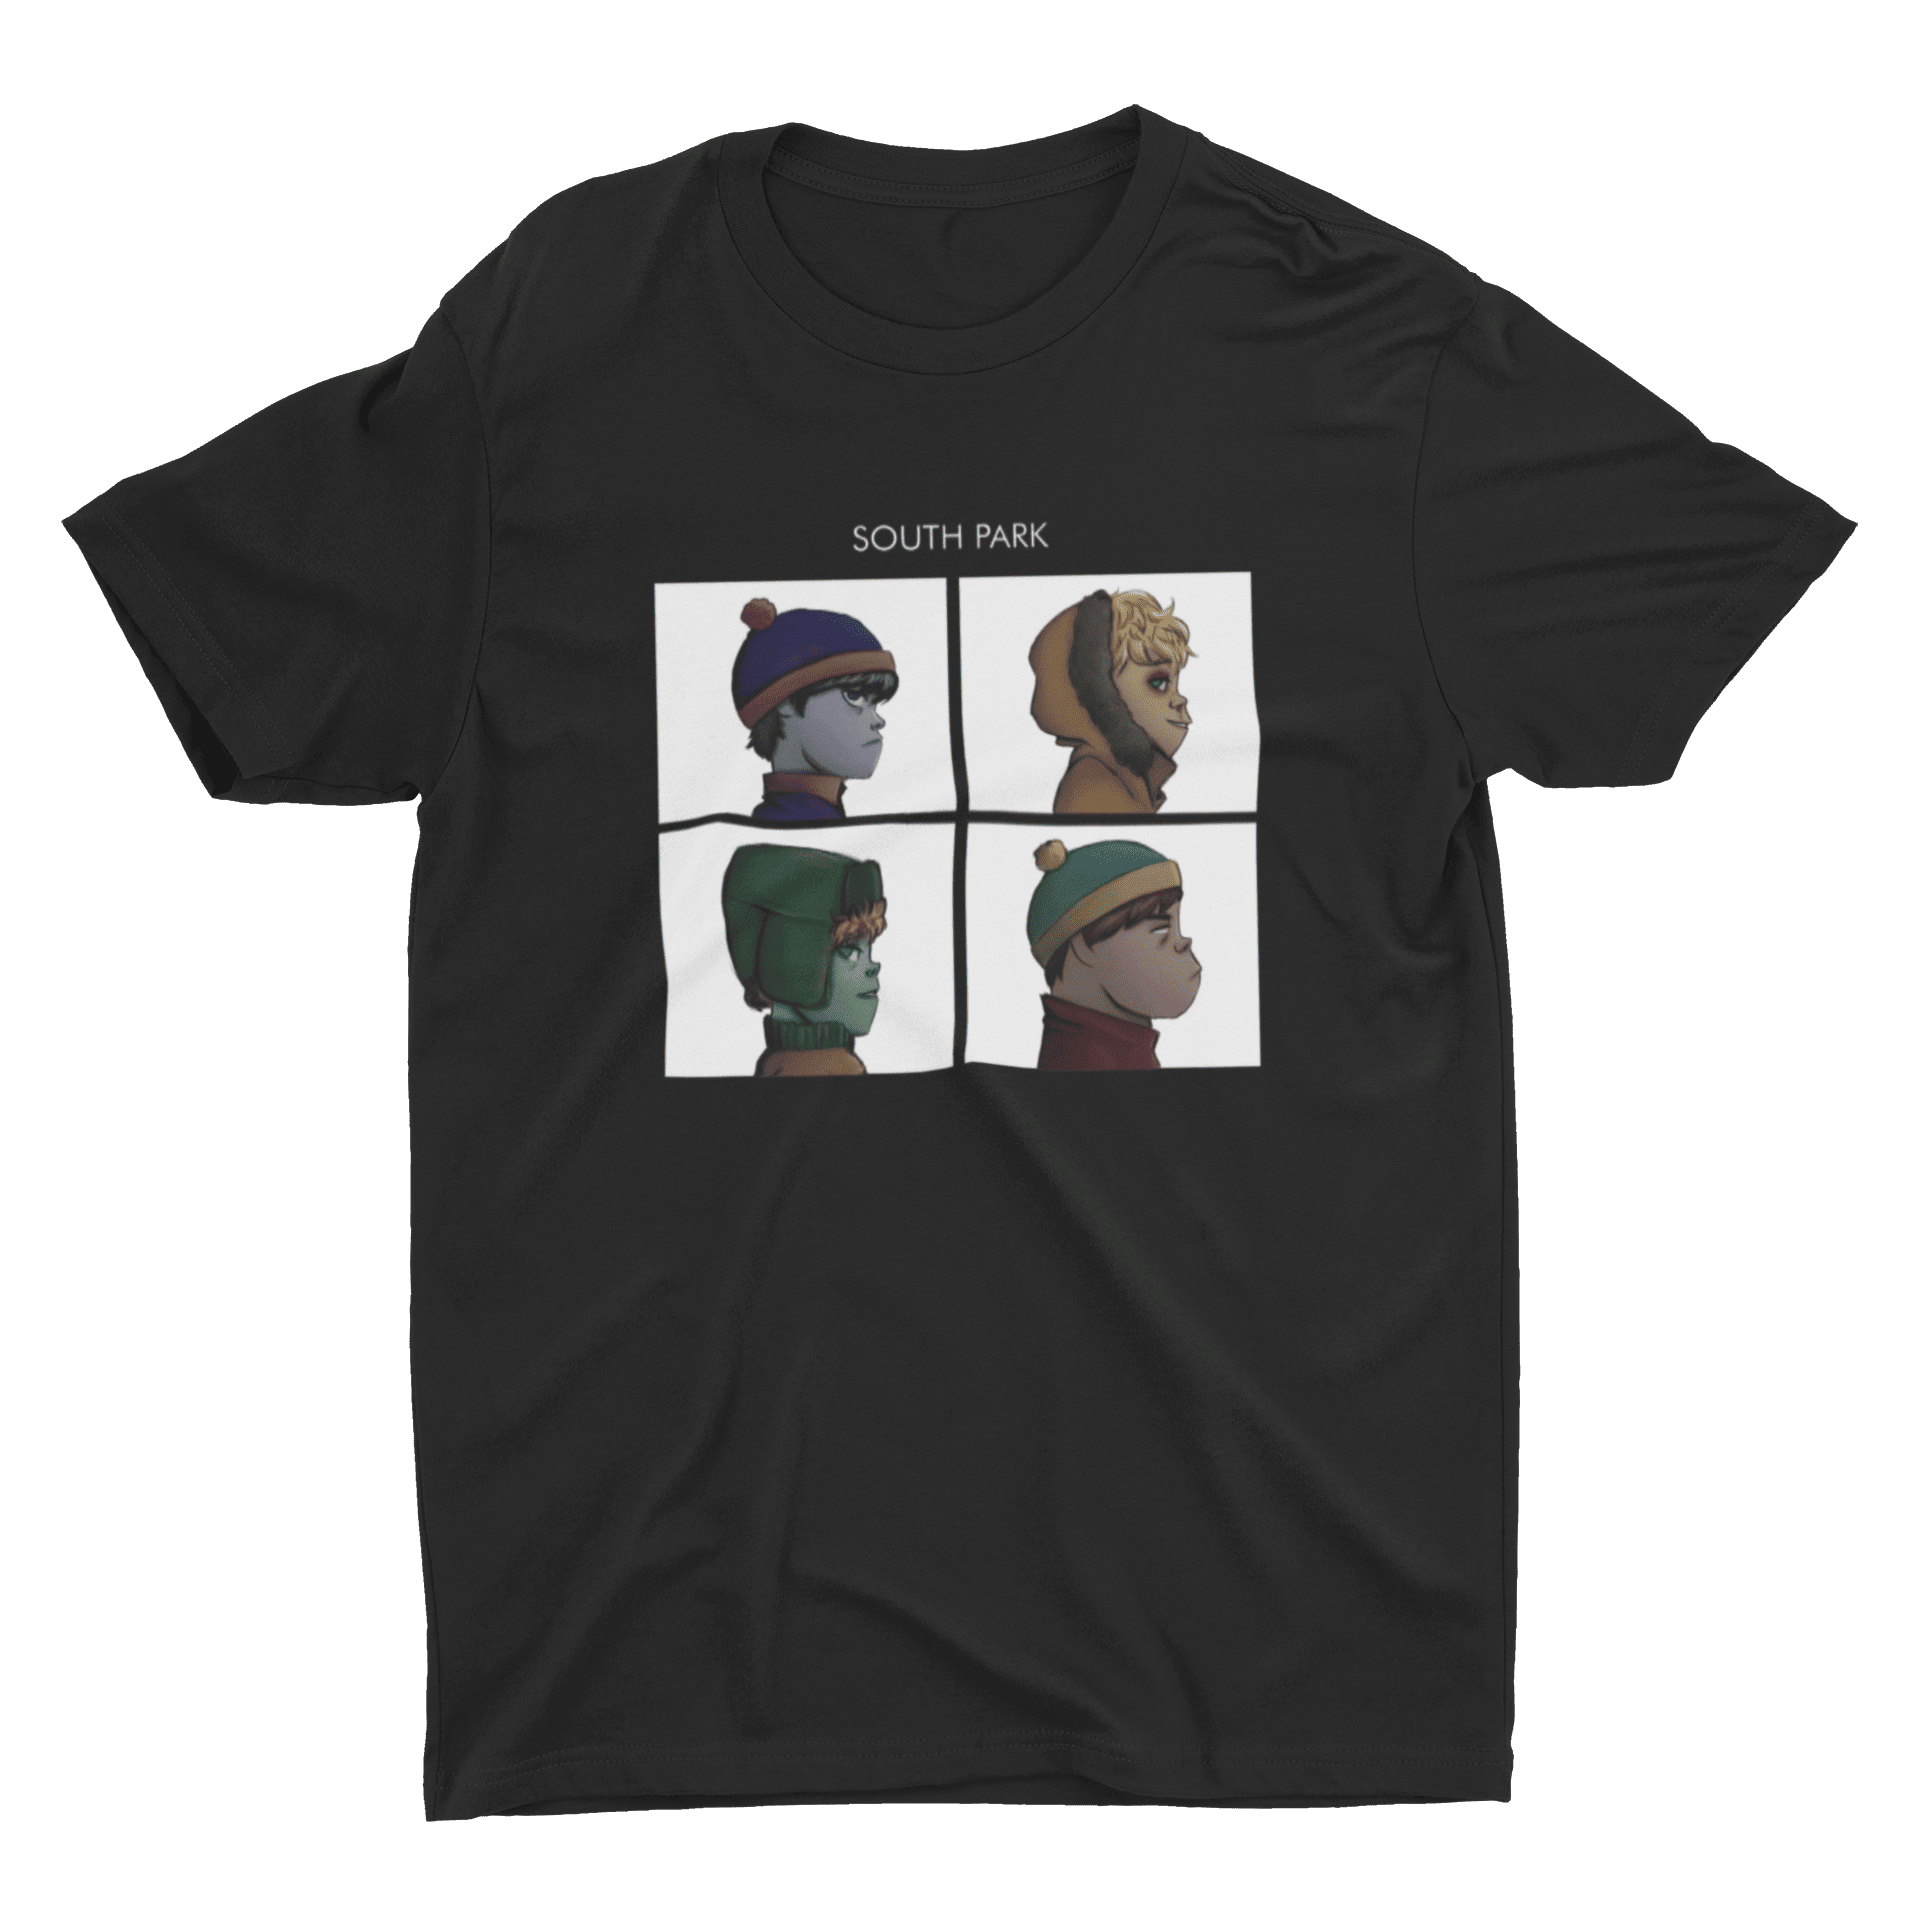 South park Gorillaz, Es un producto de ropa que es ideal para los fanáticos de  South park y Gorillaz que deseen mostrar su amor de manera divertida y original.